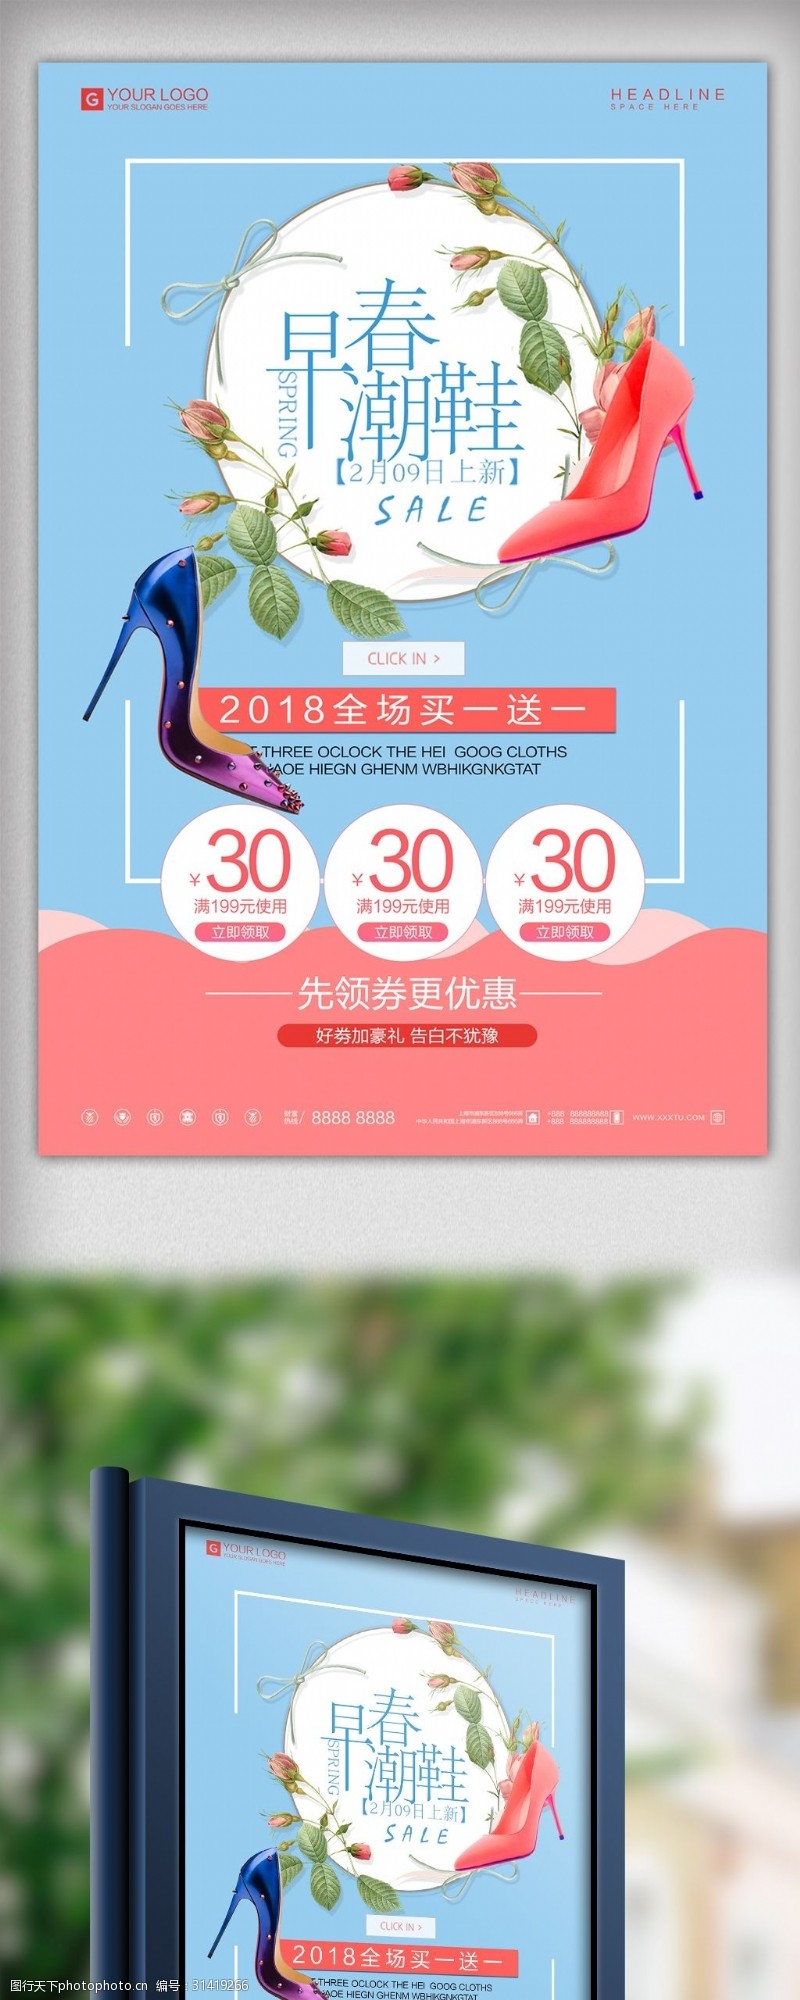 炫彩潮流女鞋促销宣传海报设计模板